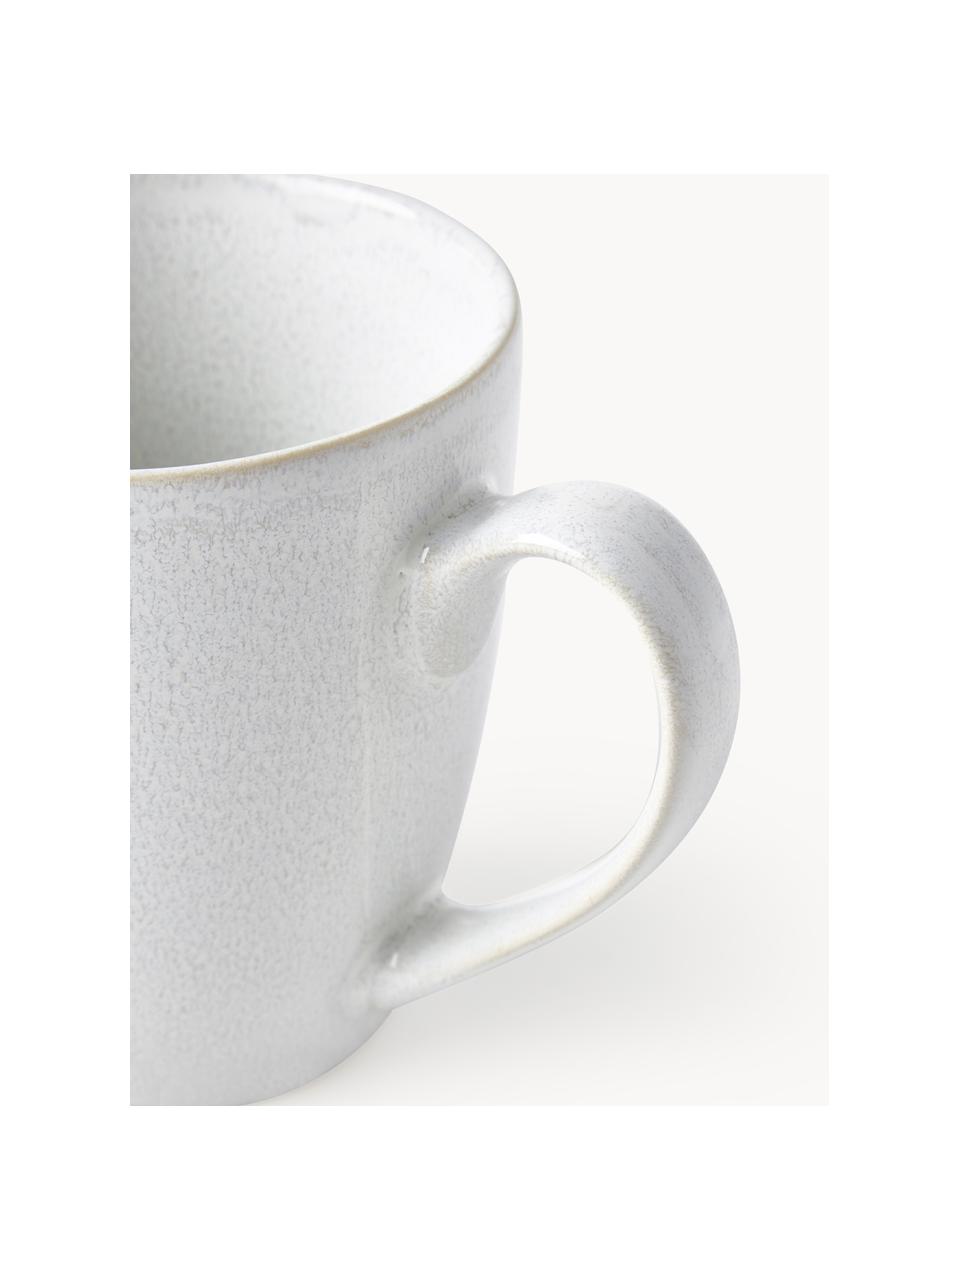 Kaffeetassen Gemma mit reaktiver Glasur, 2 Stück, Steinzeug, Weiss, Ø 12 x H 11 cm, 400 ml